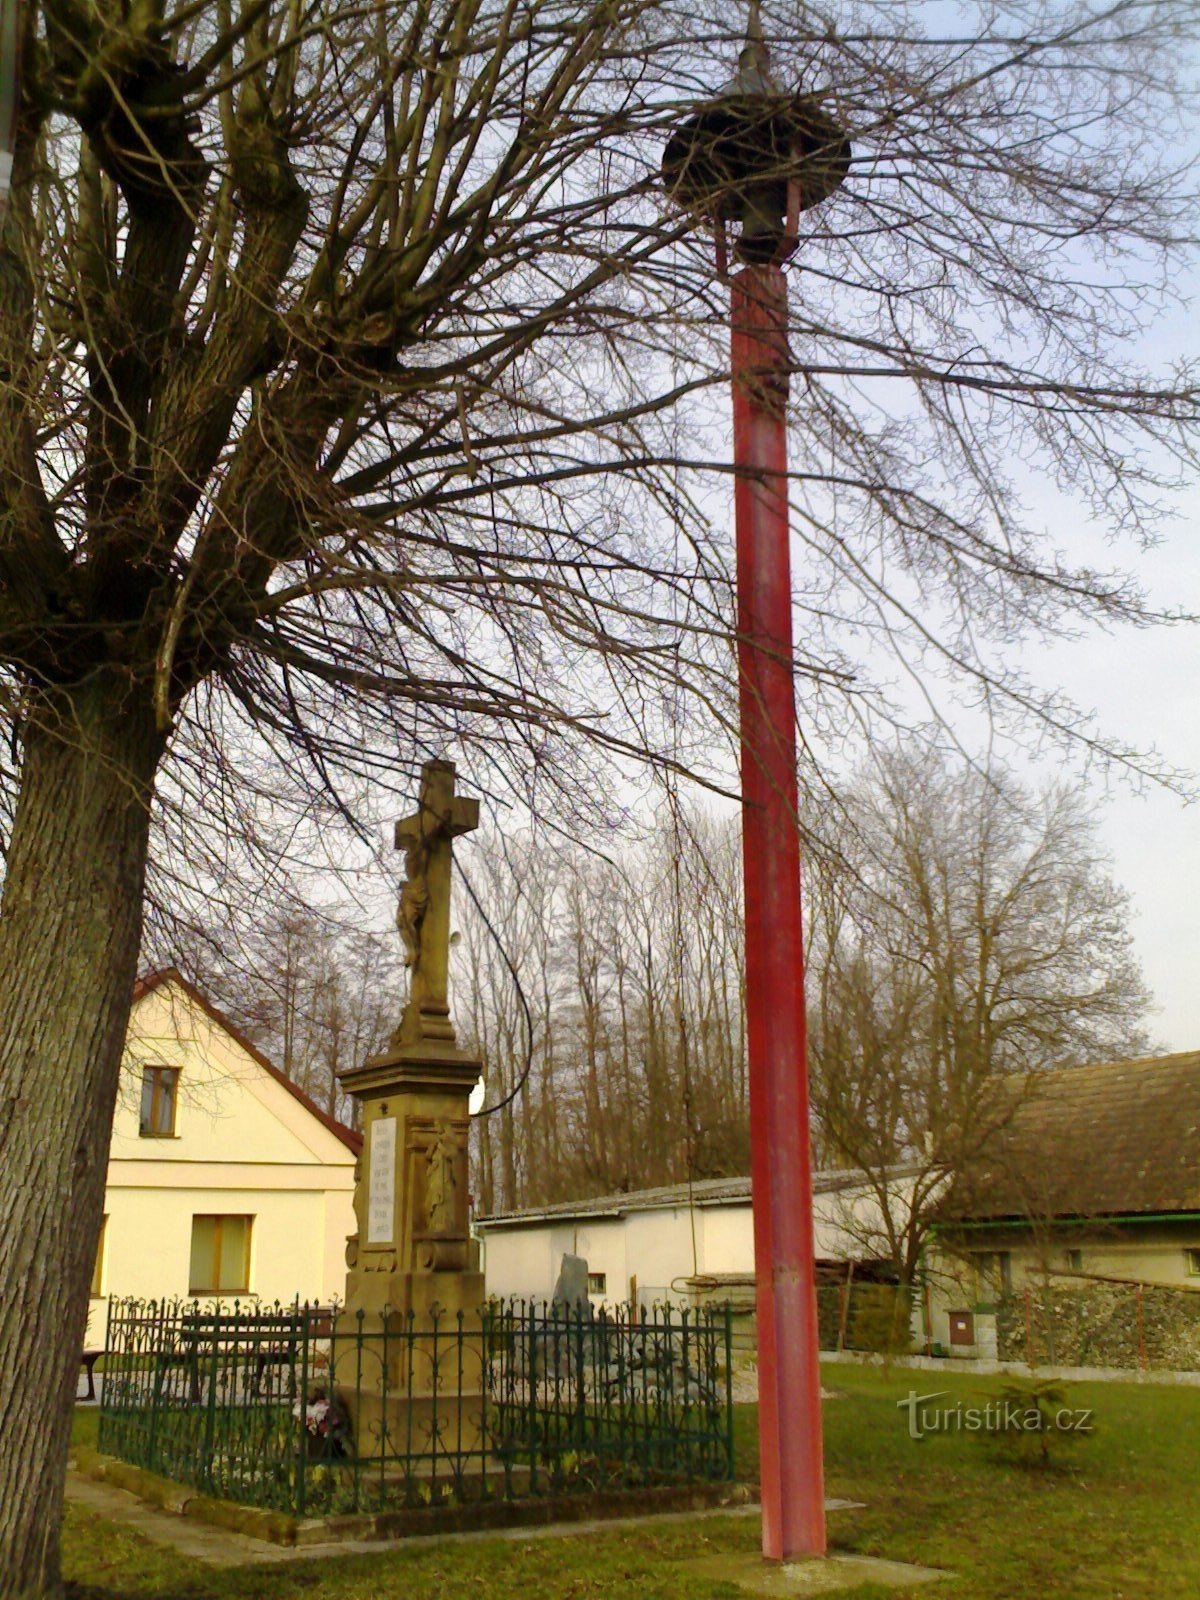 Libníkovice - spomenik raspeću sa zvonikom